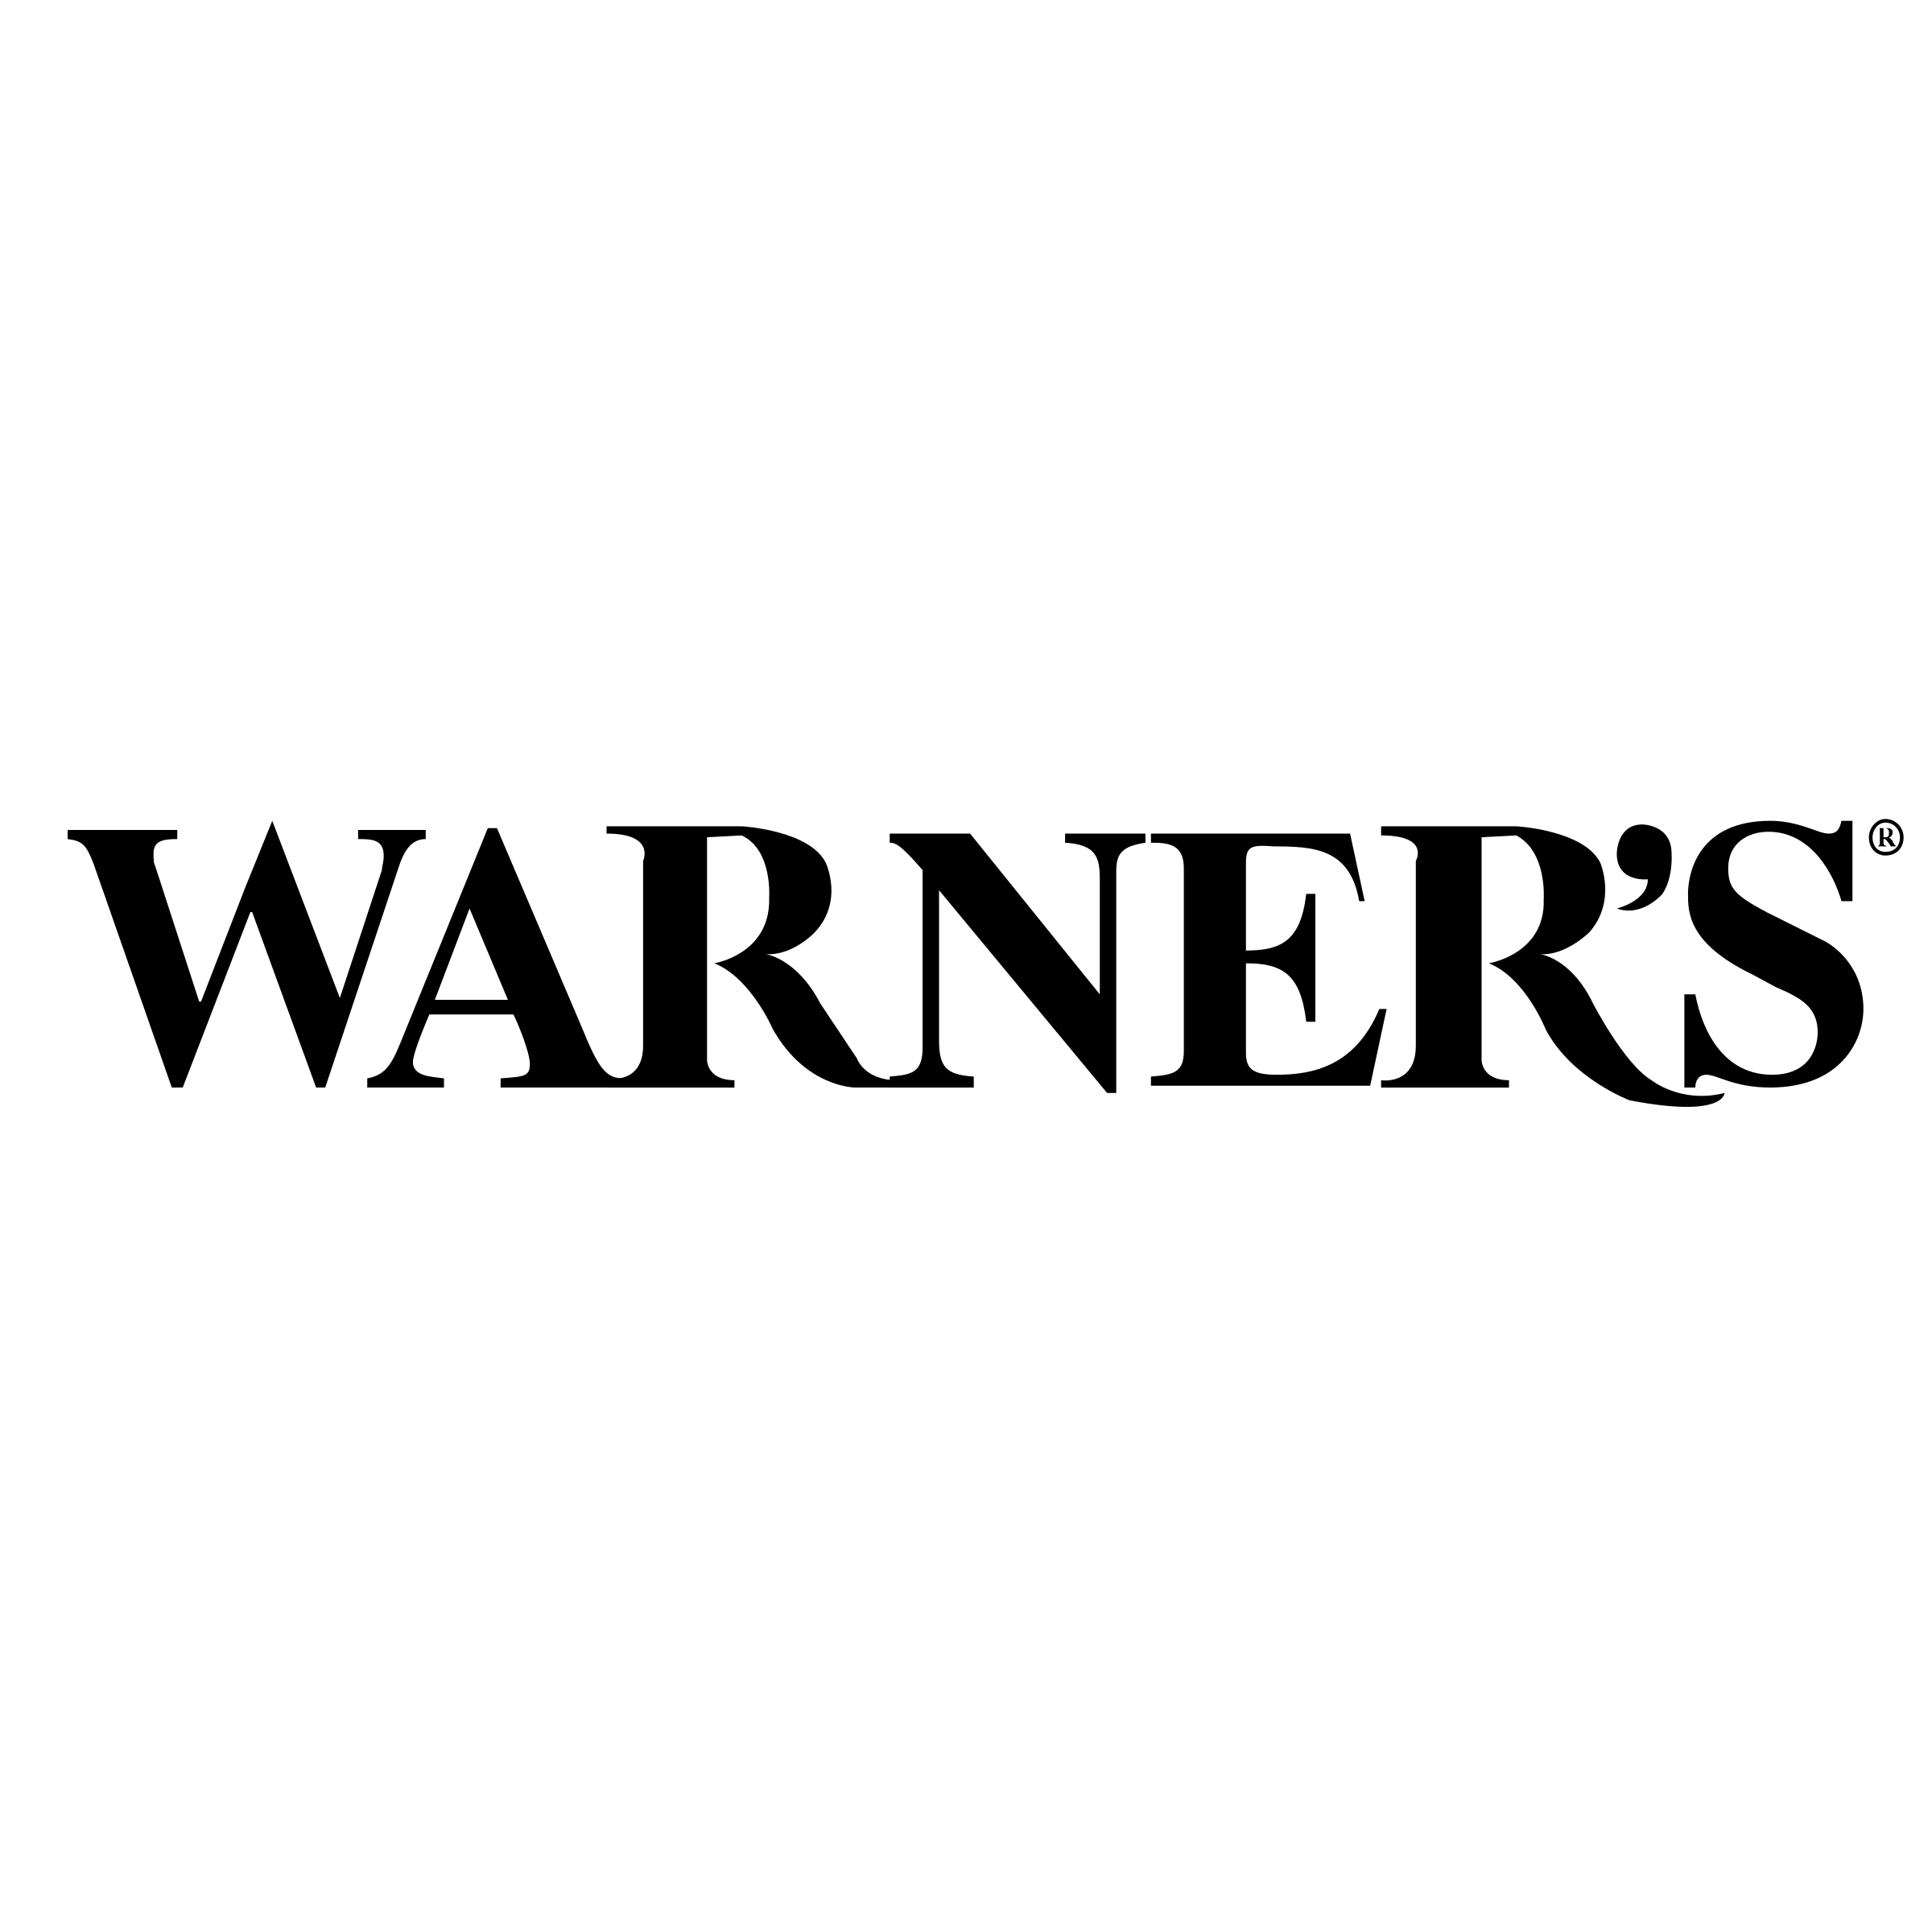 Warner's Logo - Warner's Logo PNG Transparent & SVG Vector - Freebie Supply